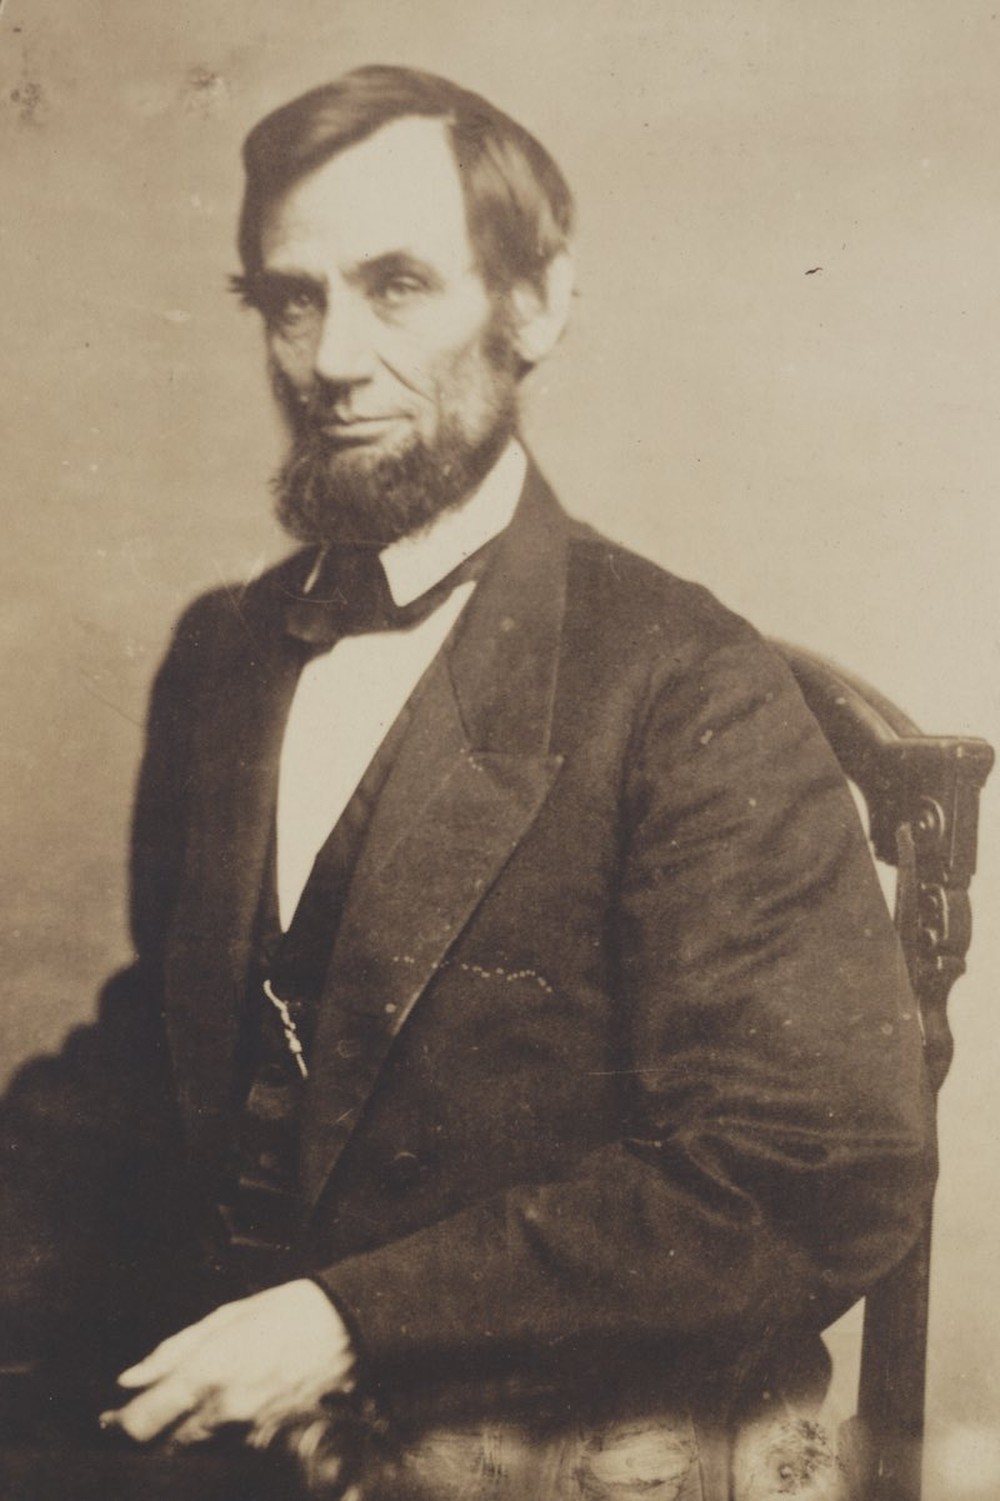 Đoạn mật mã kỳ lạ trong chiếc đồng hồ của Lincoln khắc trước 4 năm ngày ông bị ám sát - Ảnh 3.